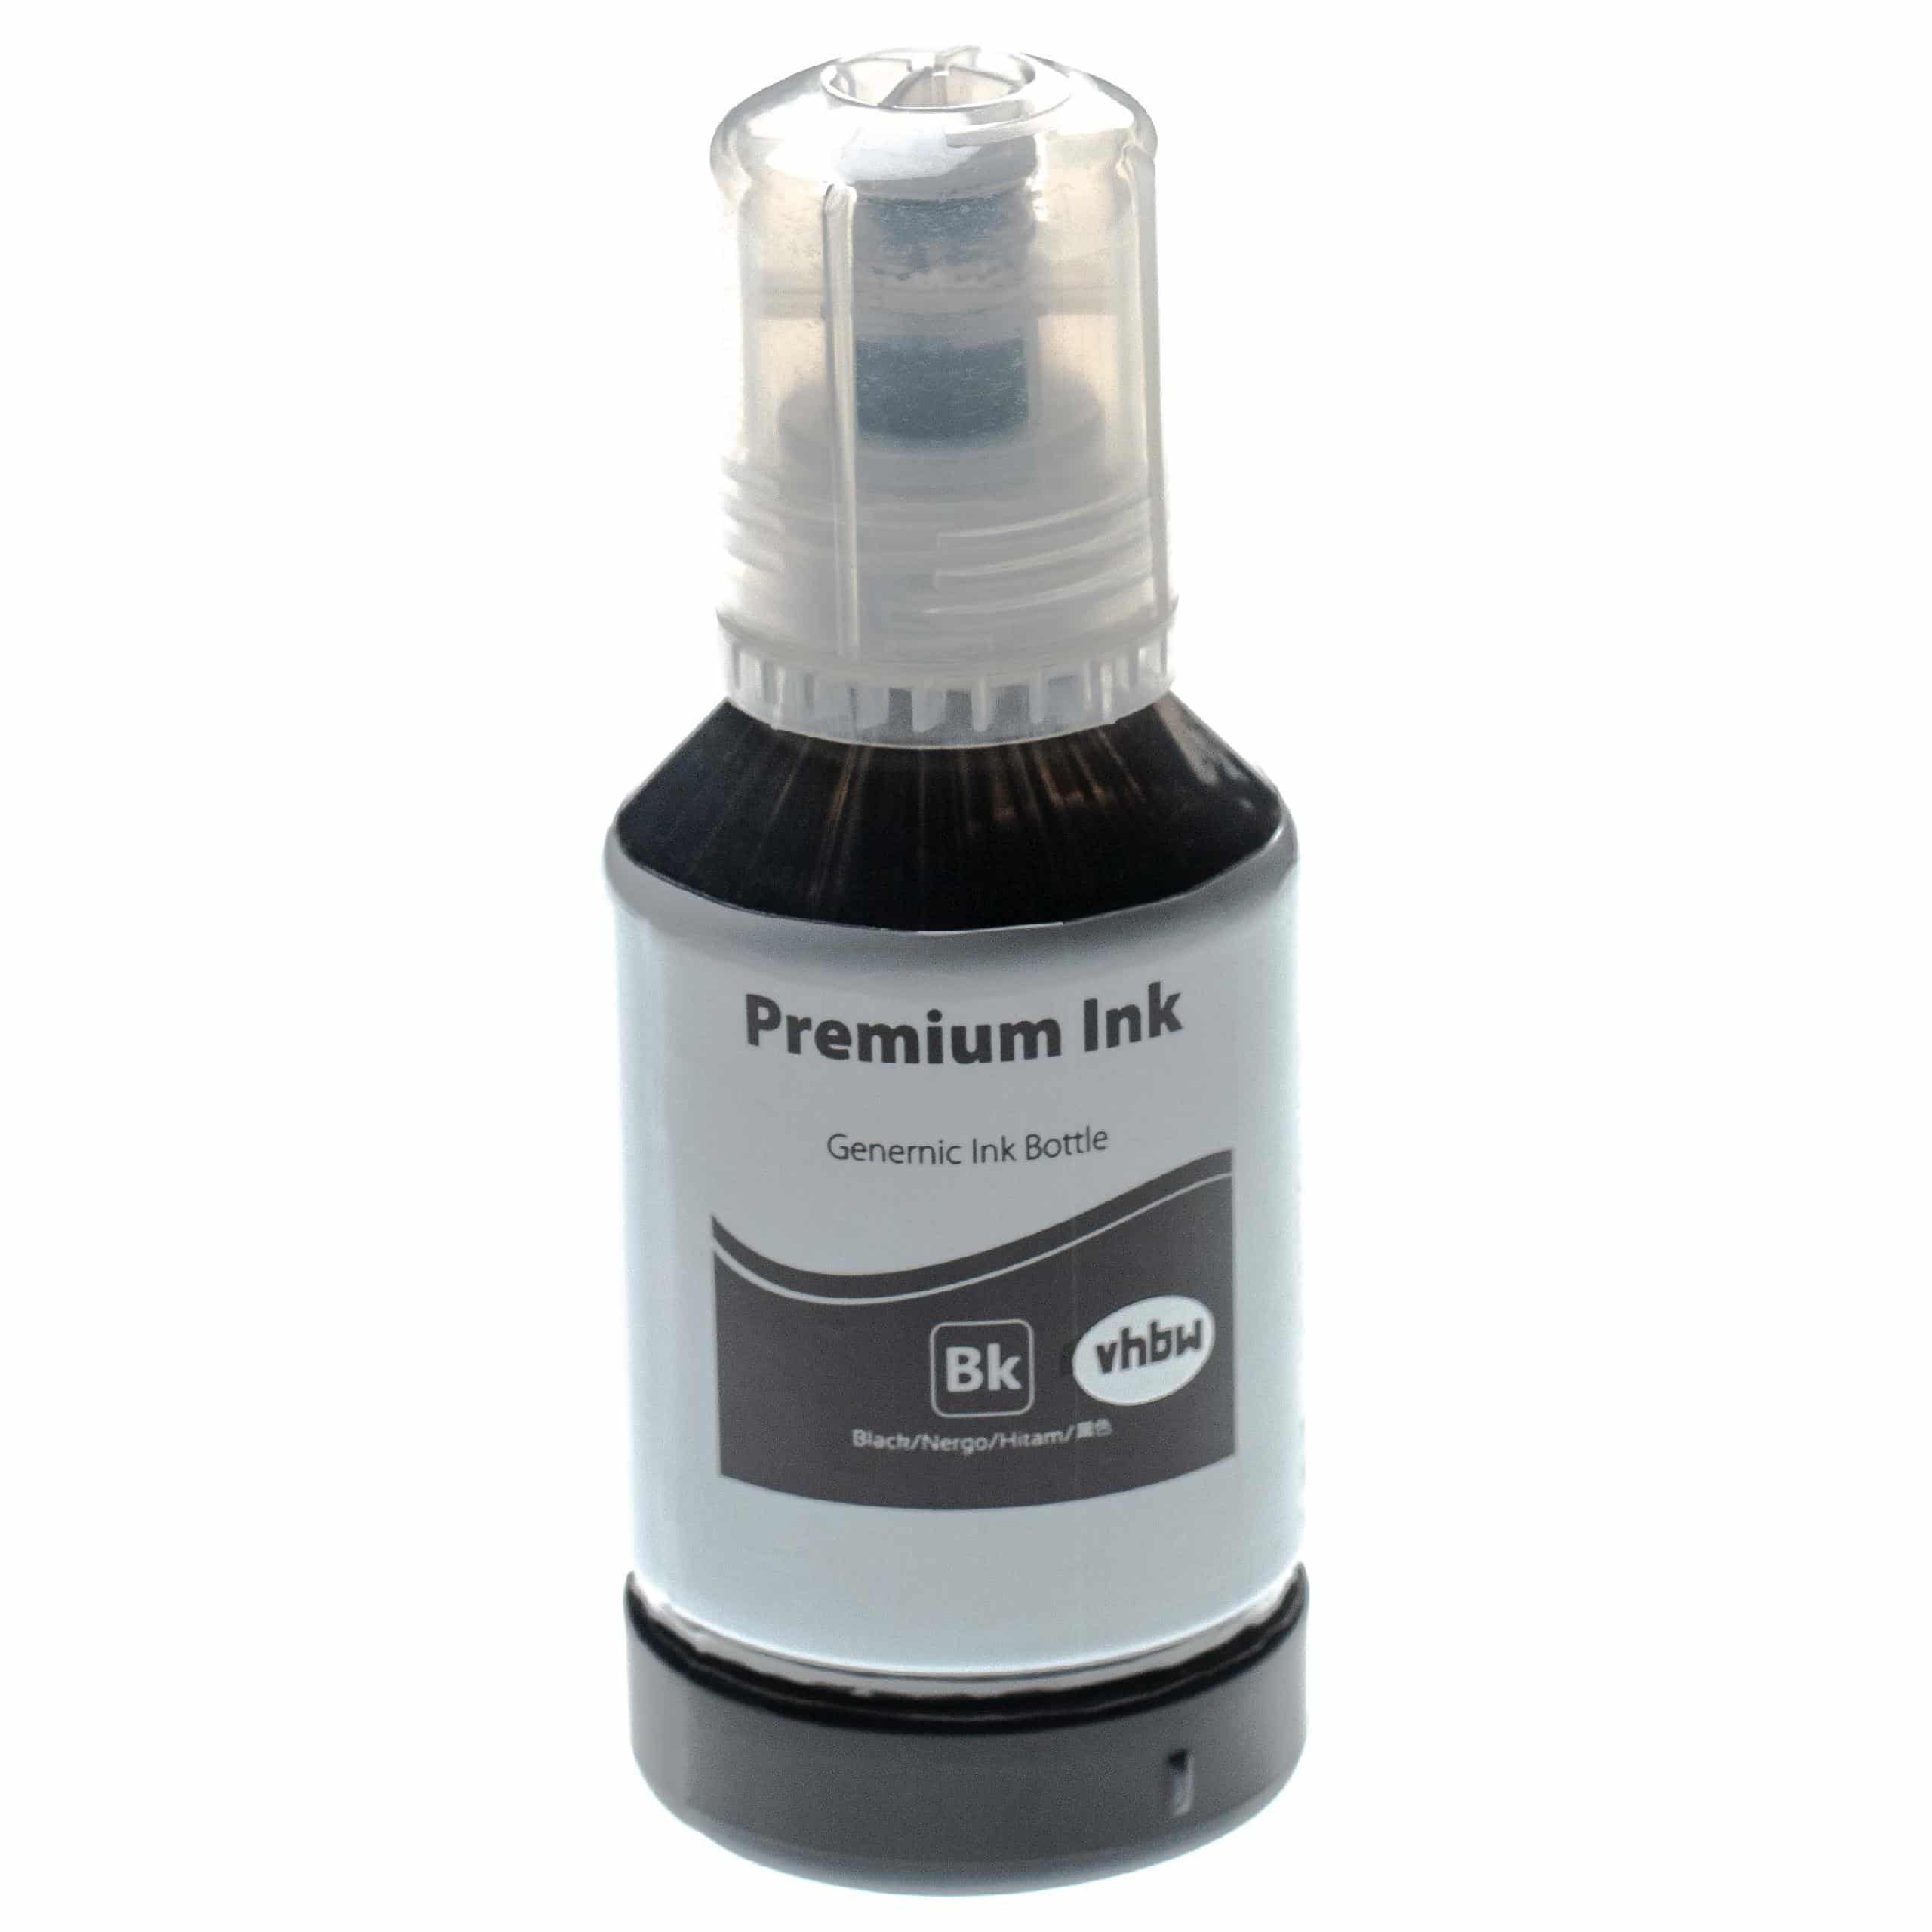 Nachfülltinte Schwarz als Ersatz für Epson 102 black Pigmenttinte für Epson Drucker u.a. - Pigmentiert, 127ml